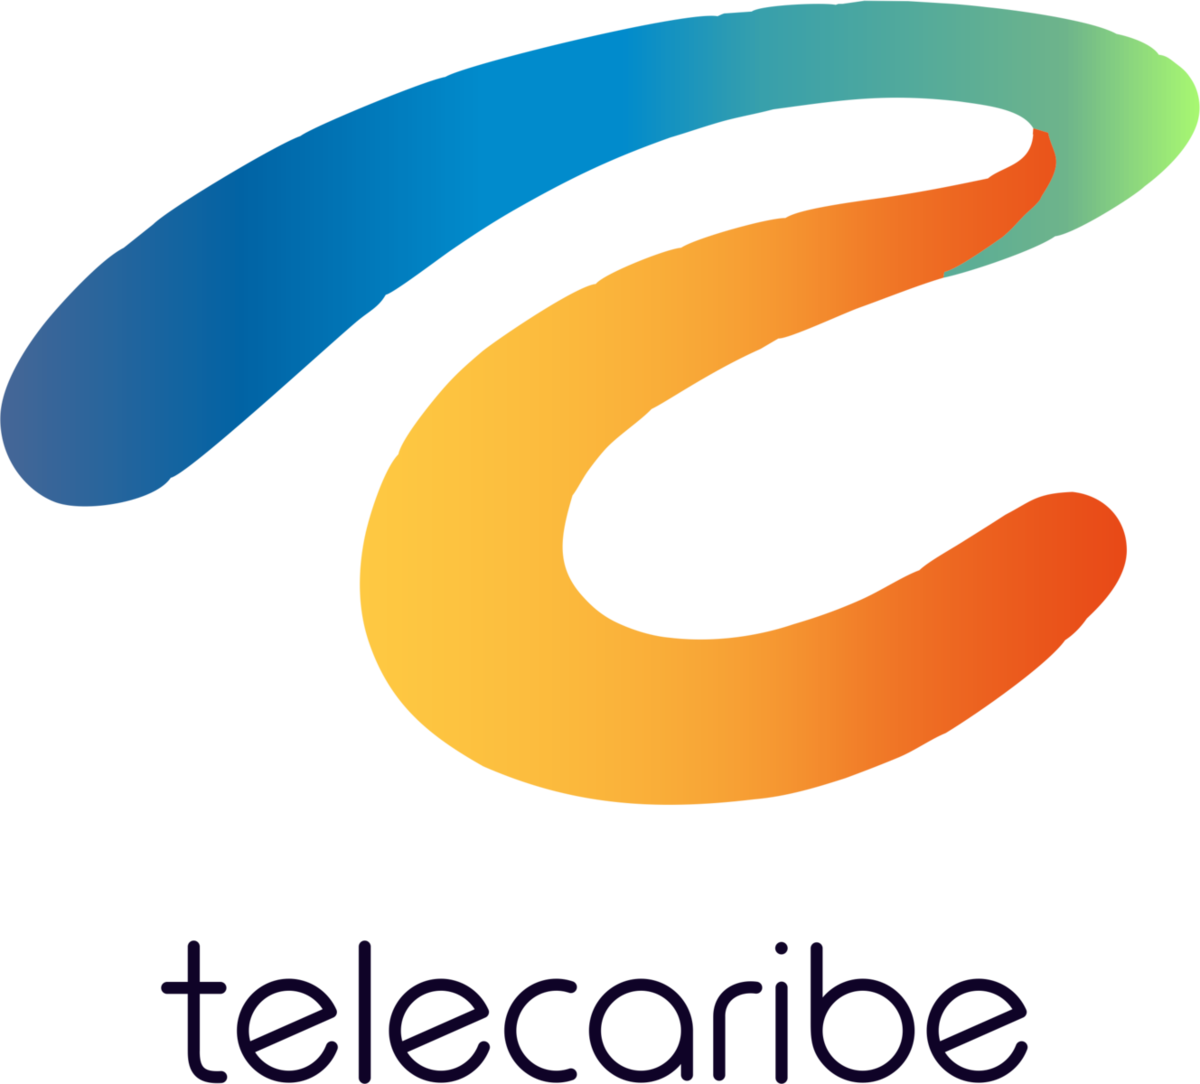 [bash] - Telecaribe Colombia Logo (1200x1084)